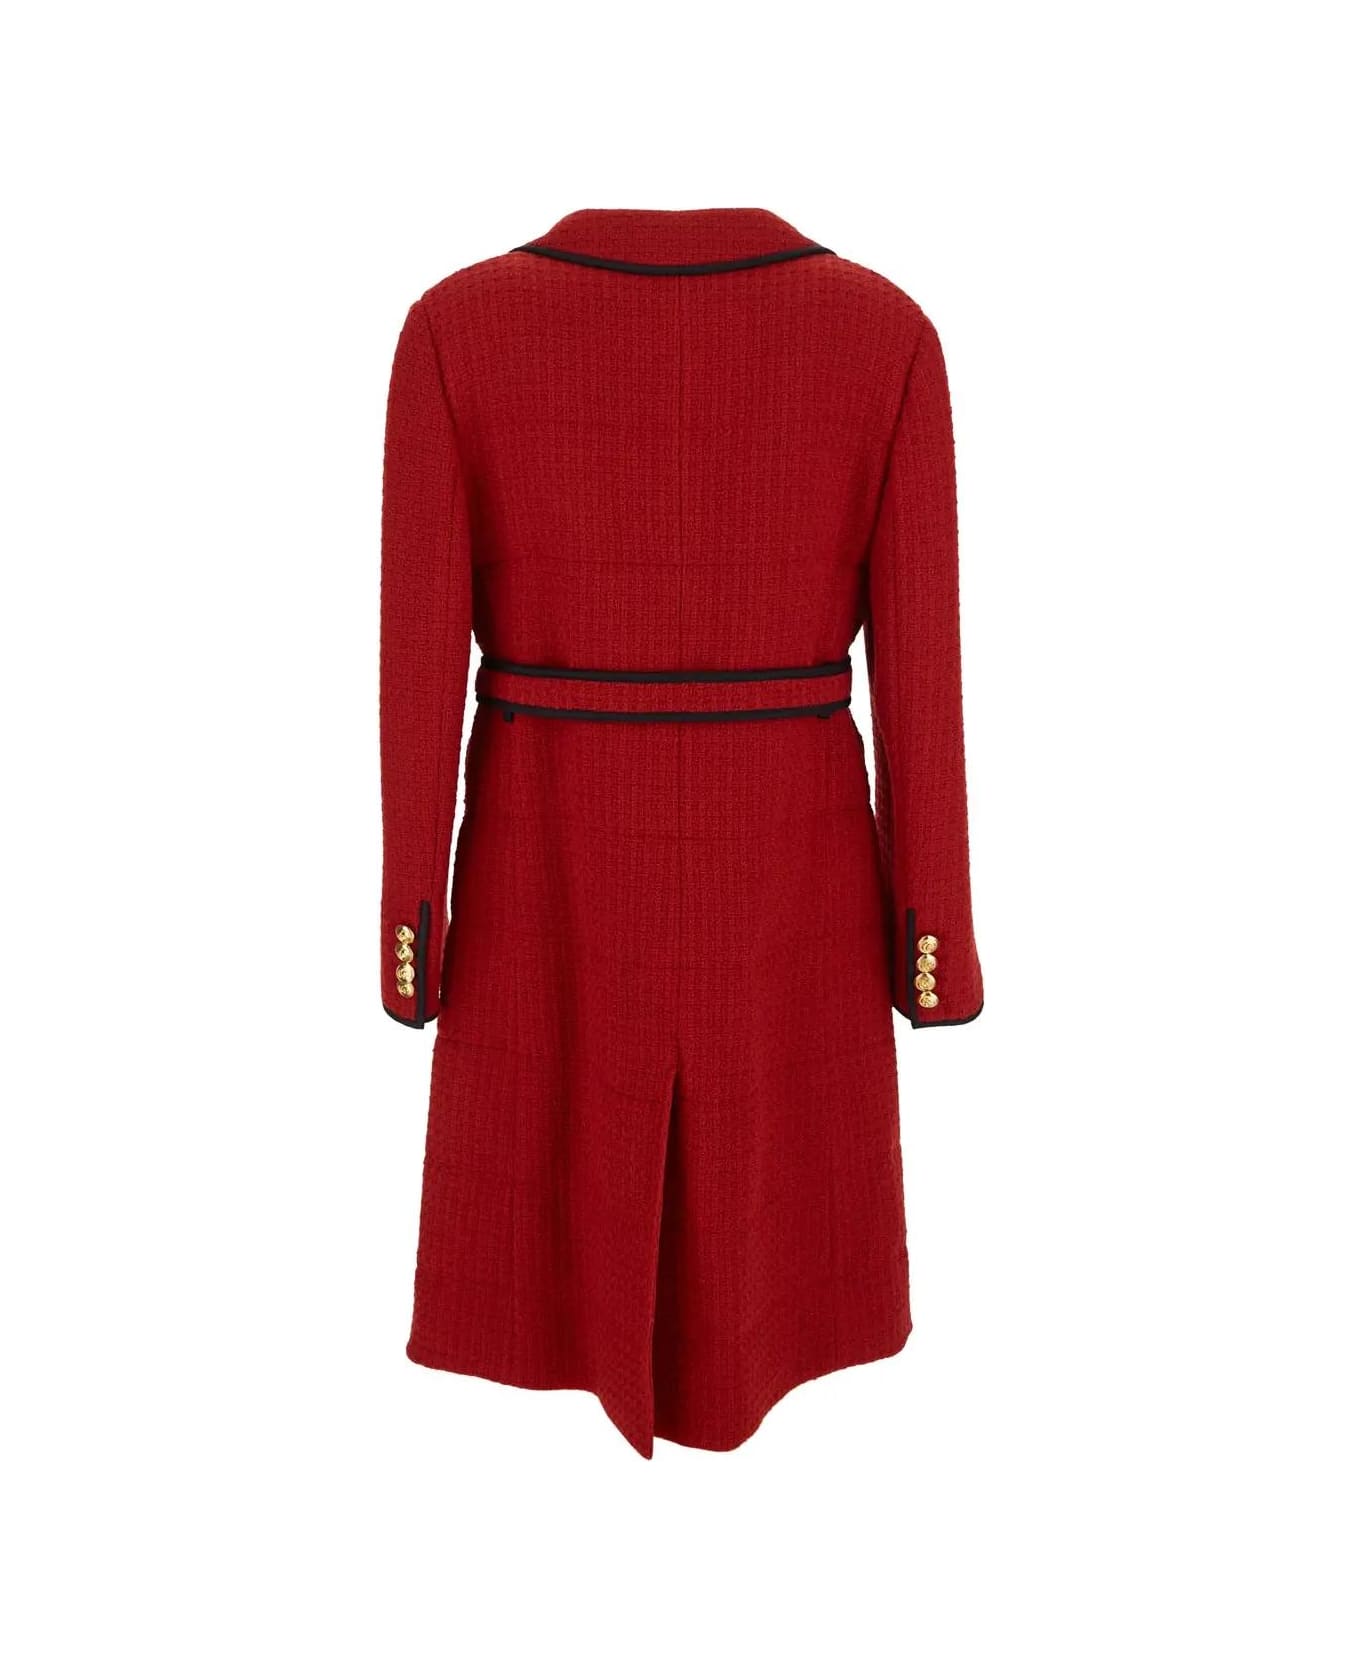 Gucci Wool Long Coat - Red コート